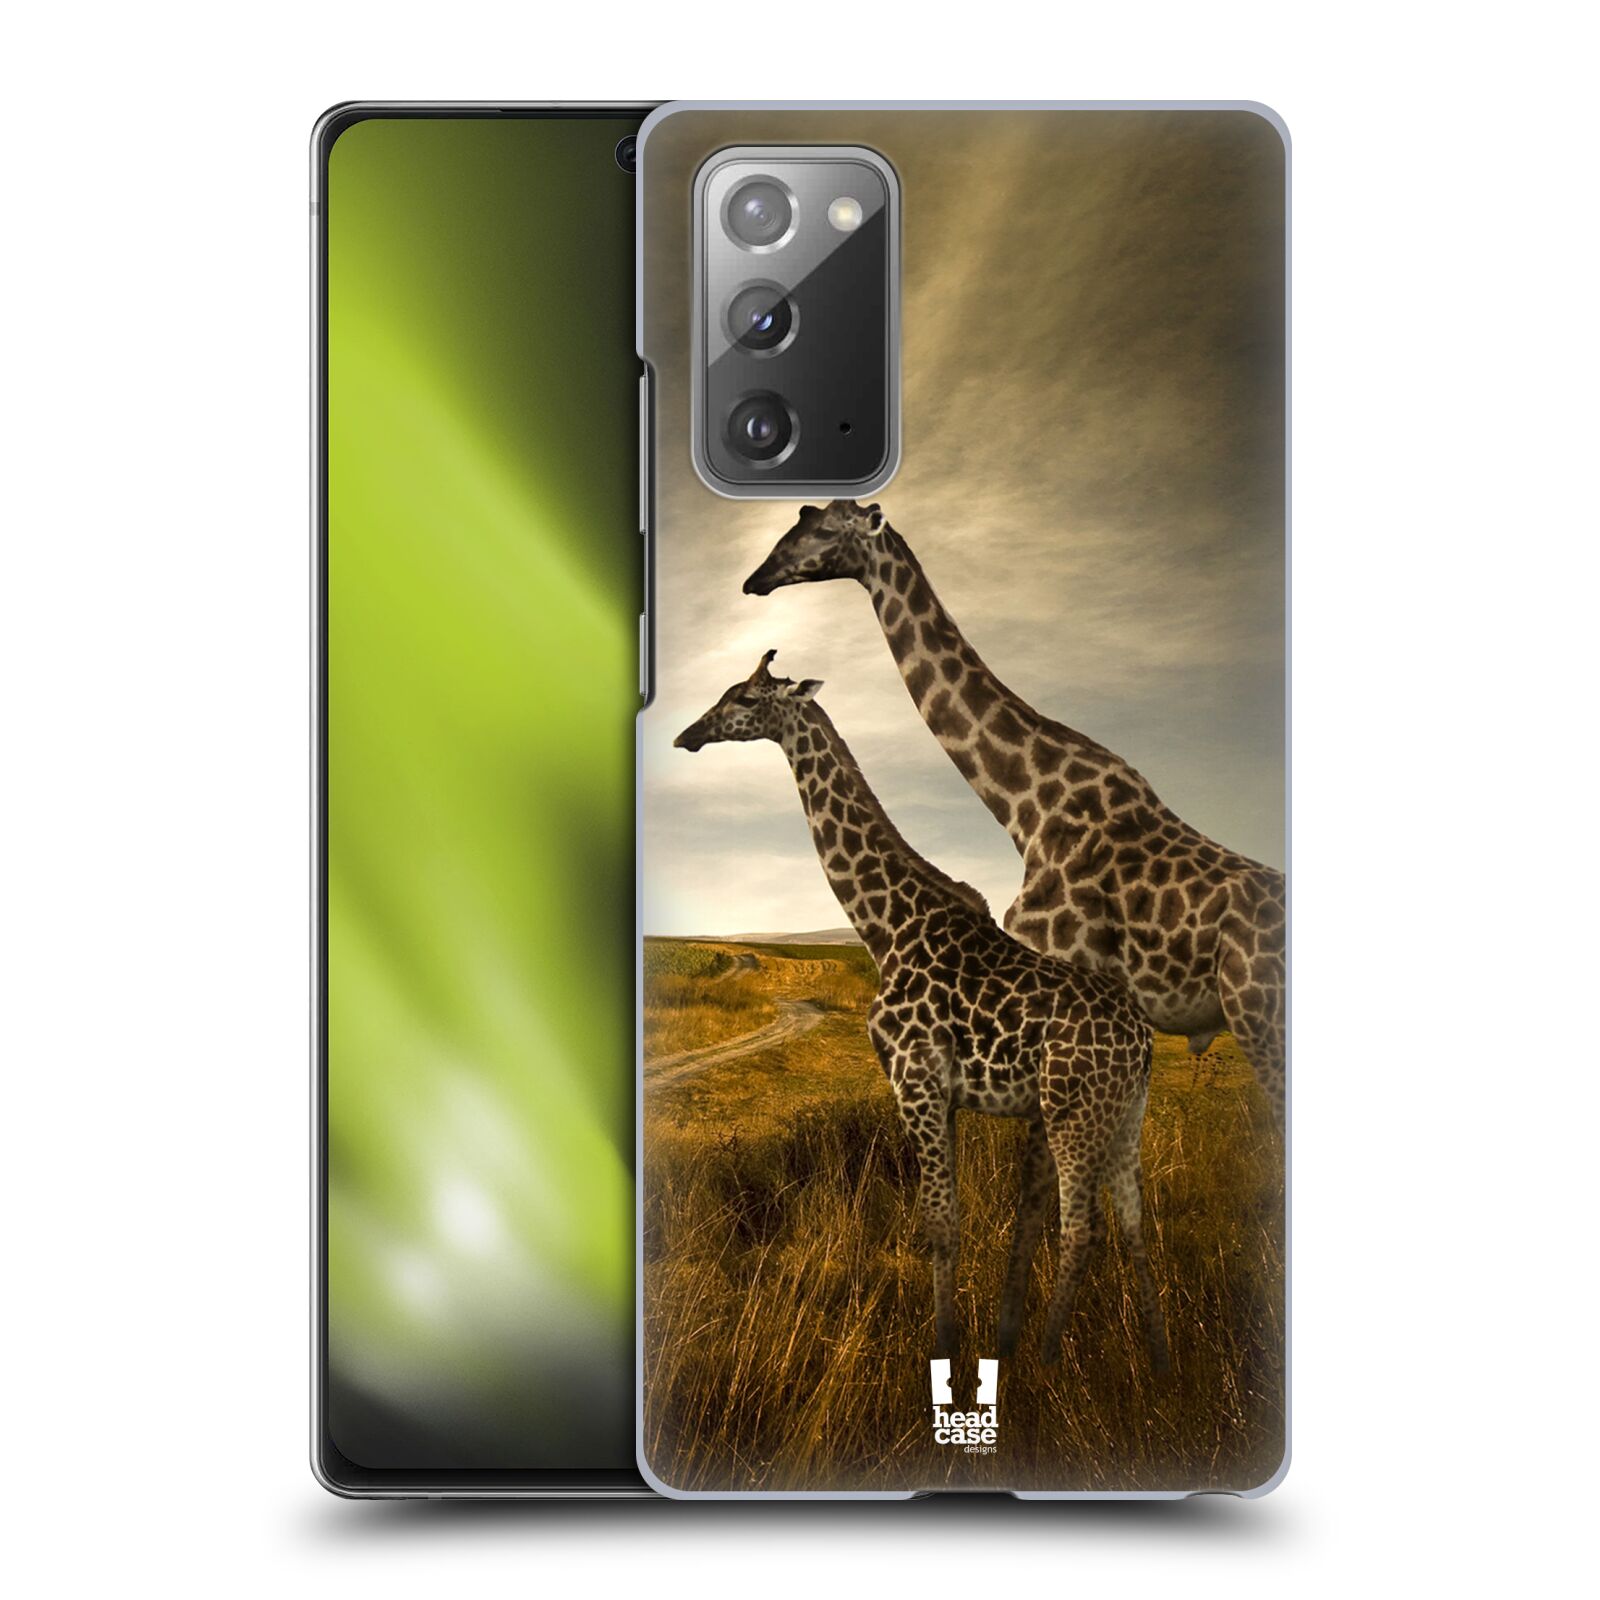 Zadní obal pro mobil Samsung Galaxy Note 20 - HEAD CASE - Svět zvířat žirafy